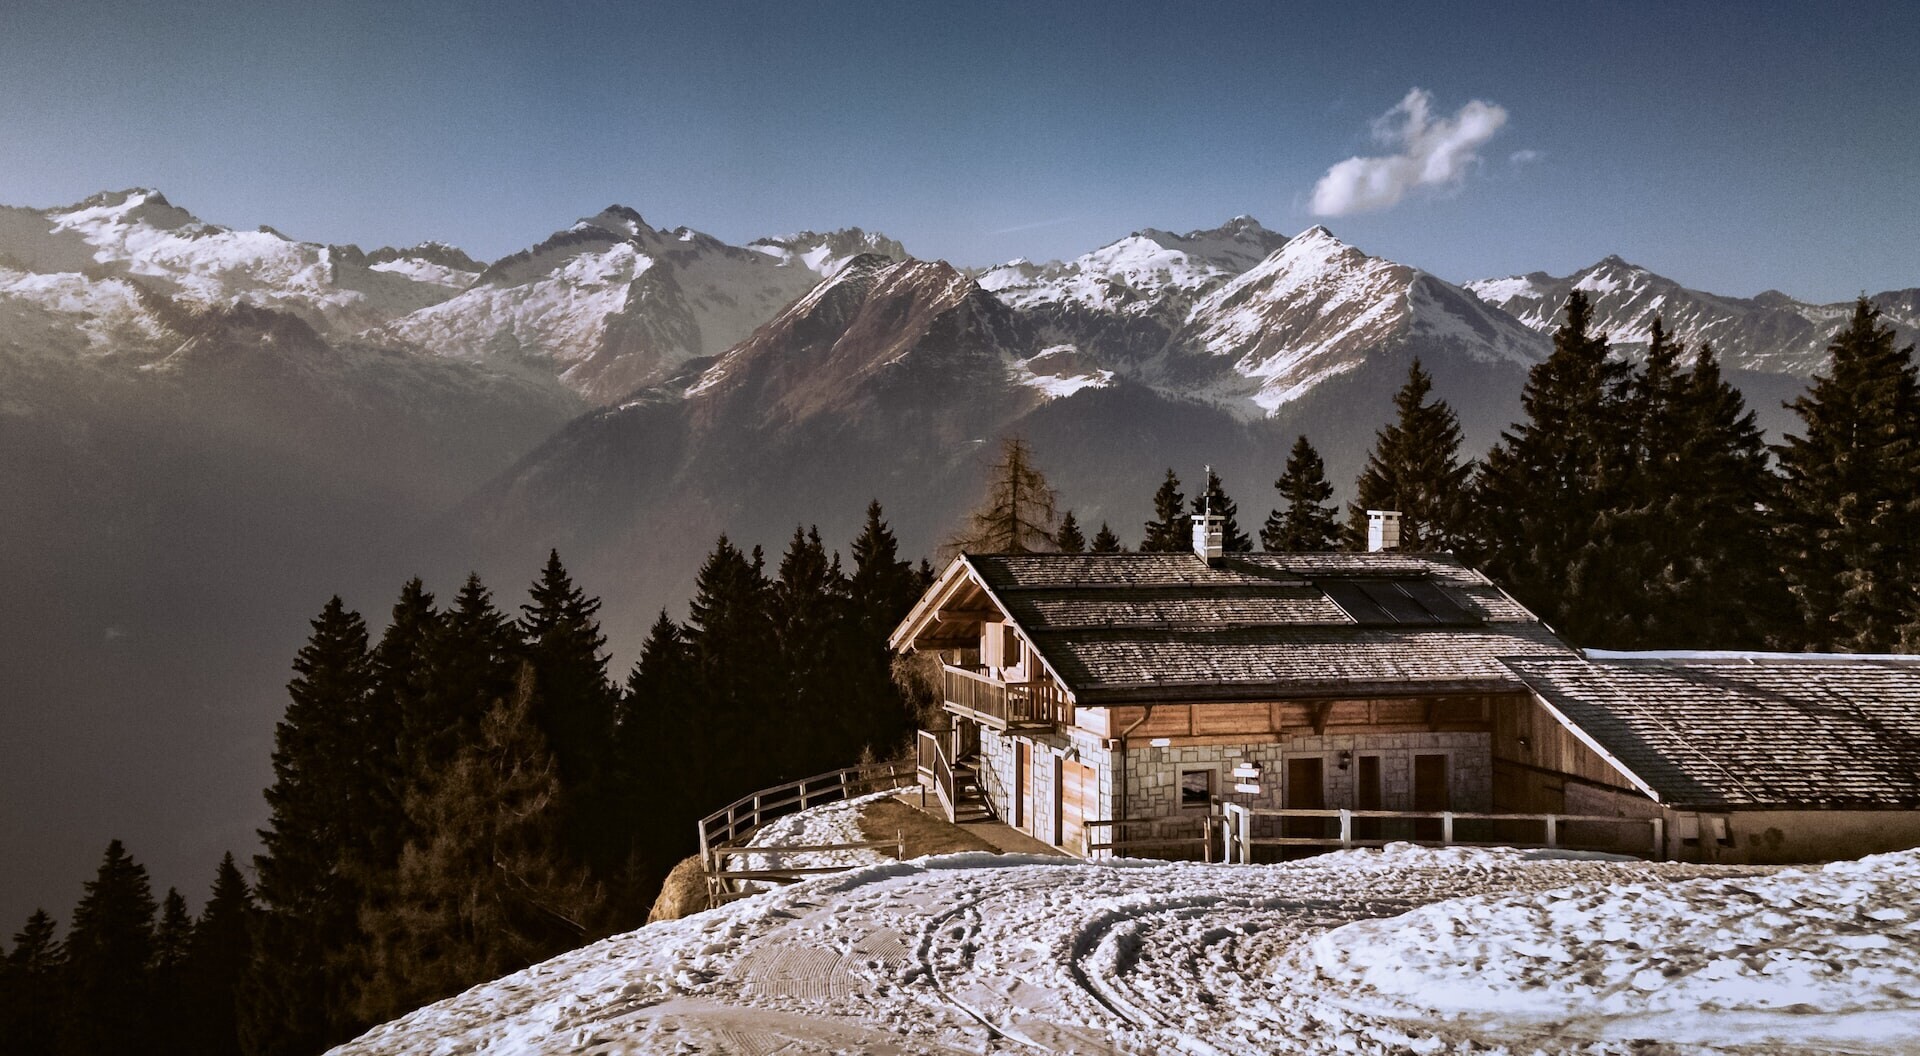 Hledáte horskou chatu na prémiovém místě? Z lyžařských středisek je nejdražší švýcarský Gstaad